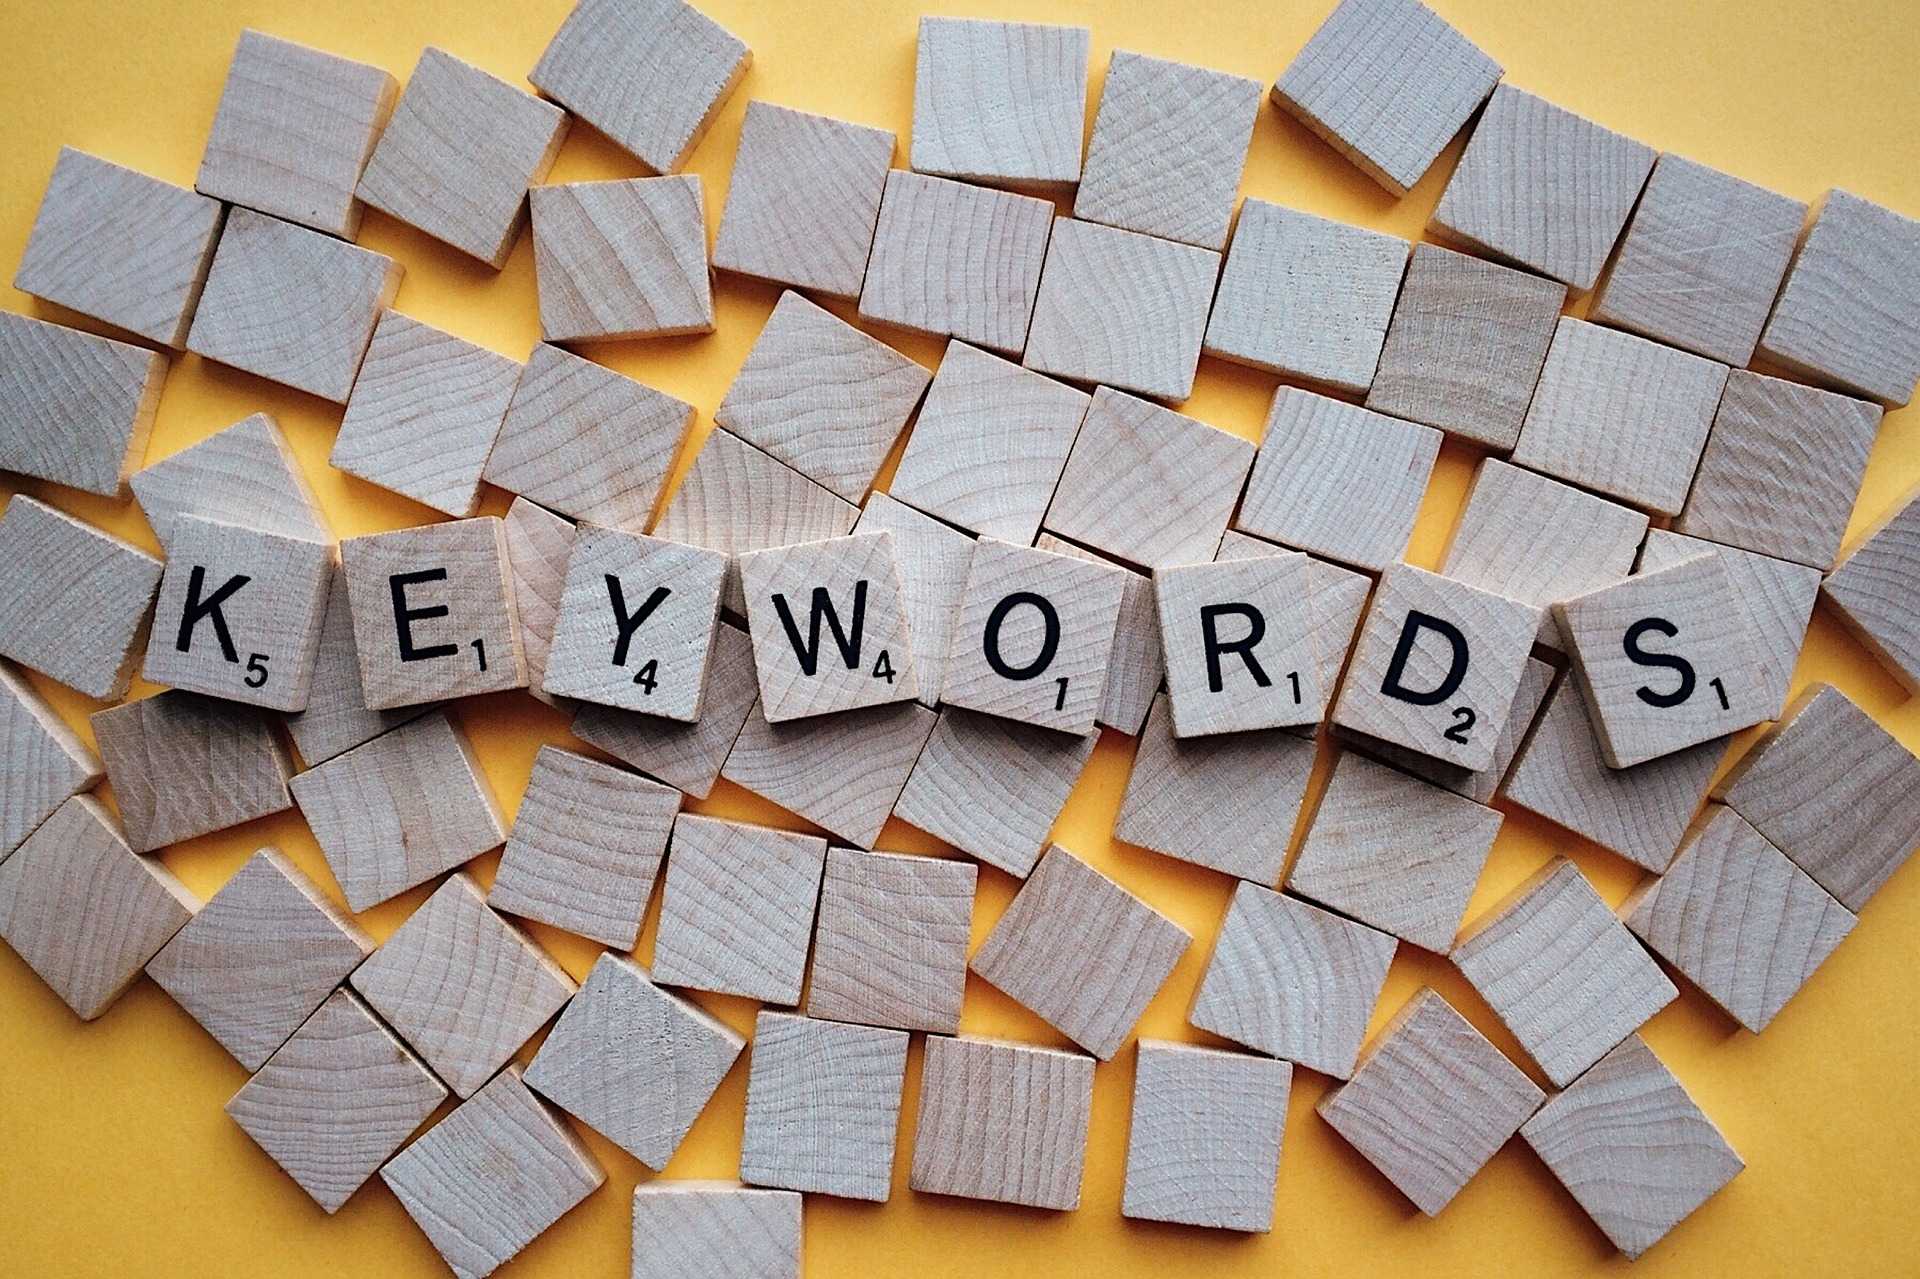 Ο αγγλικός όρος Keyword σημαίνει μία ή περισσότερες λέξεις που γράφουν οι χρήστες στις μηχανές αναζήτησης για να βρουν και να συμβουλευτούν τους ιστότοπους που τους ενδιαφέρουν